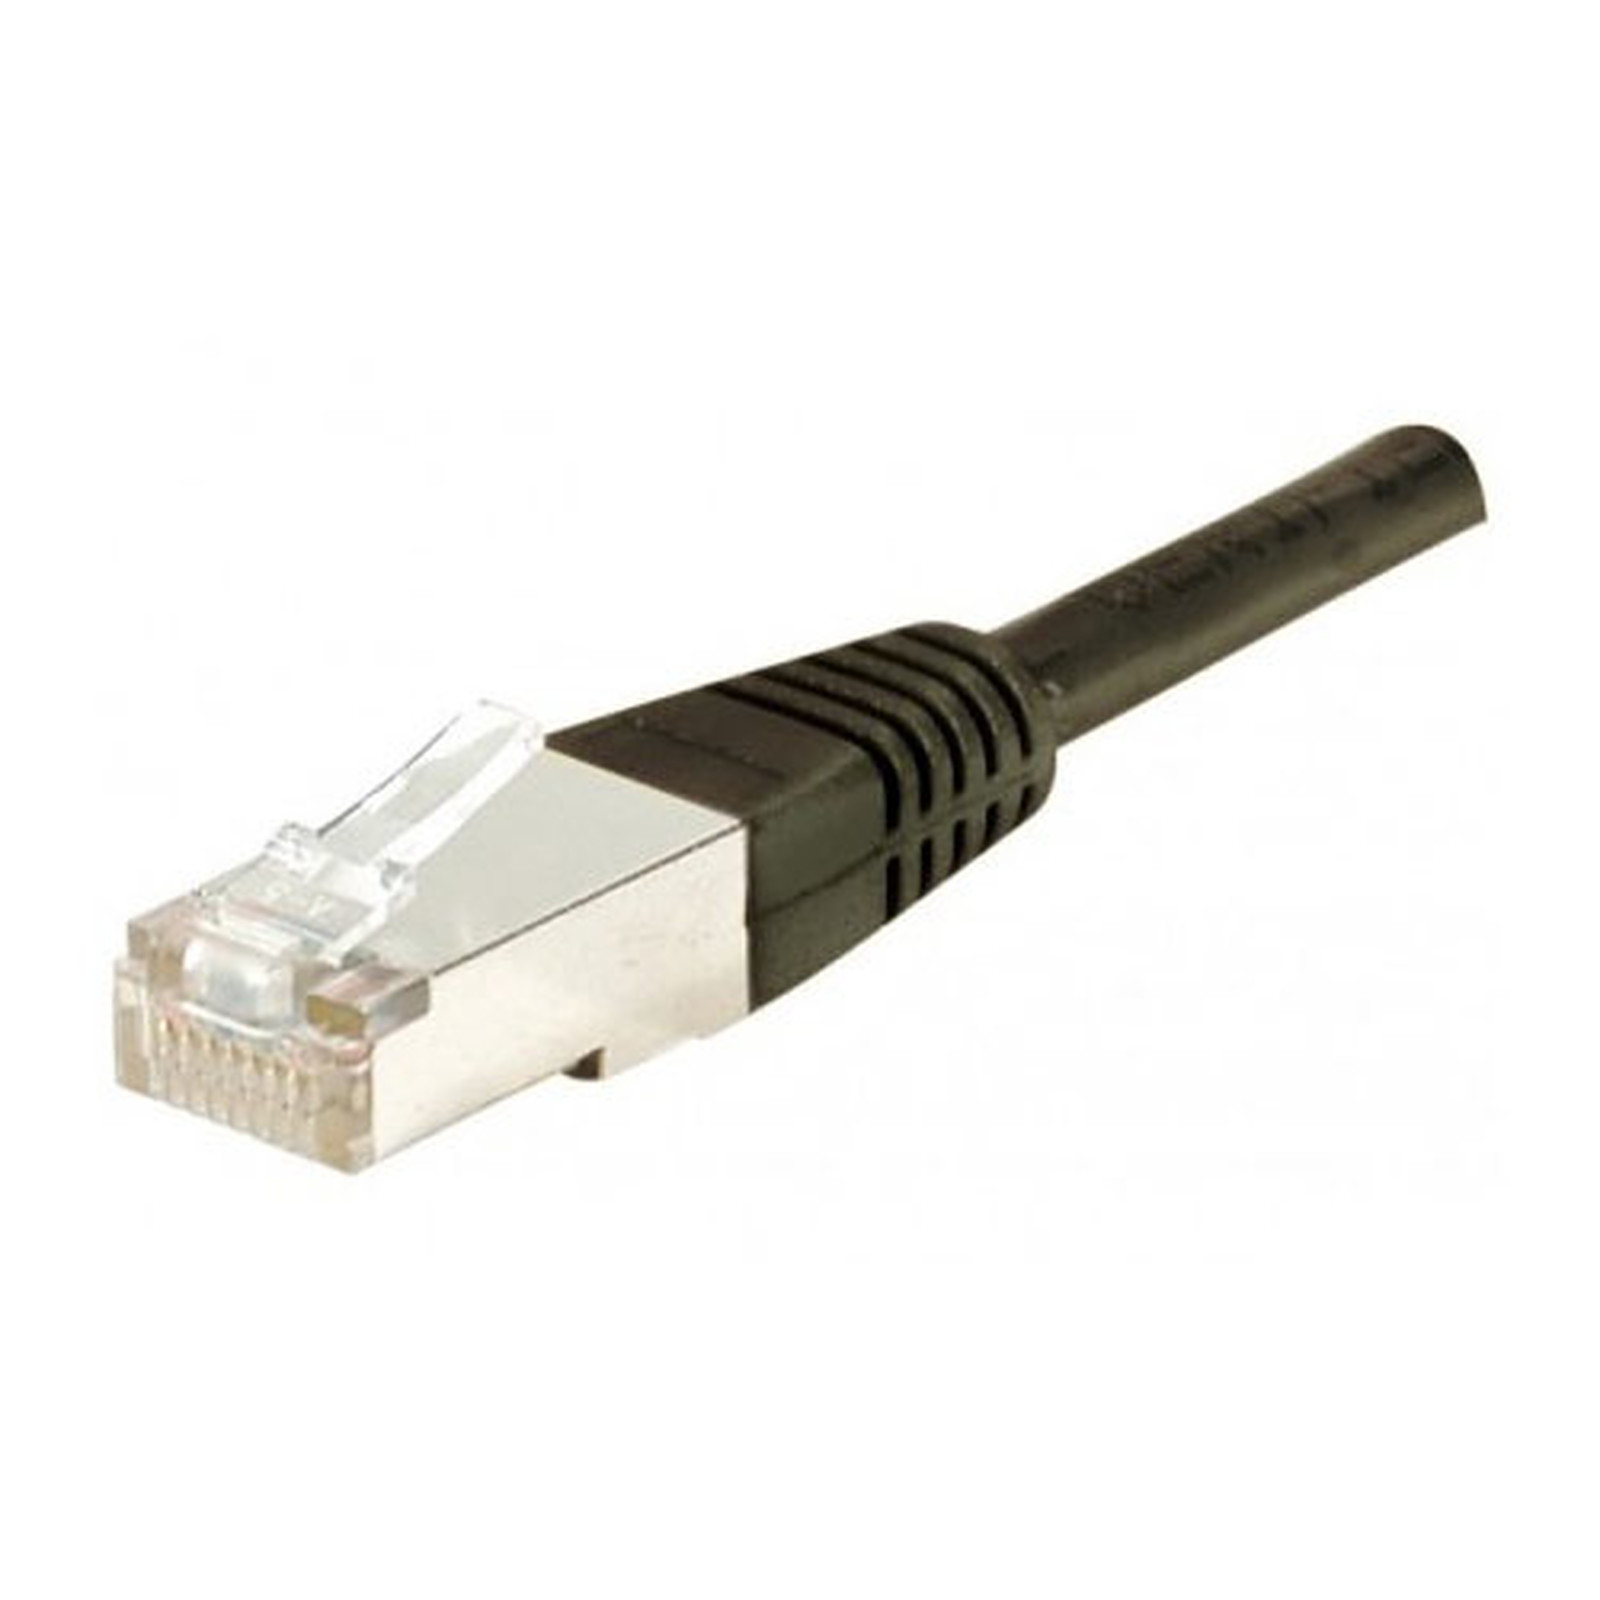 Cable RJ45 categorie 5e F/UTP 2 m (Noir) - Cable RJ45 Generique